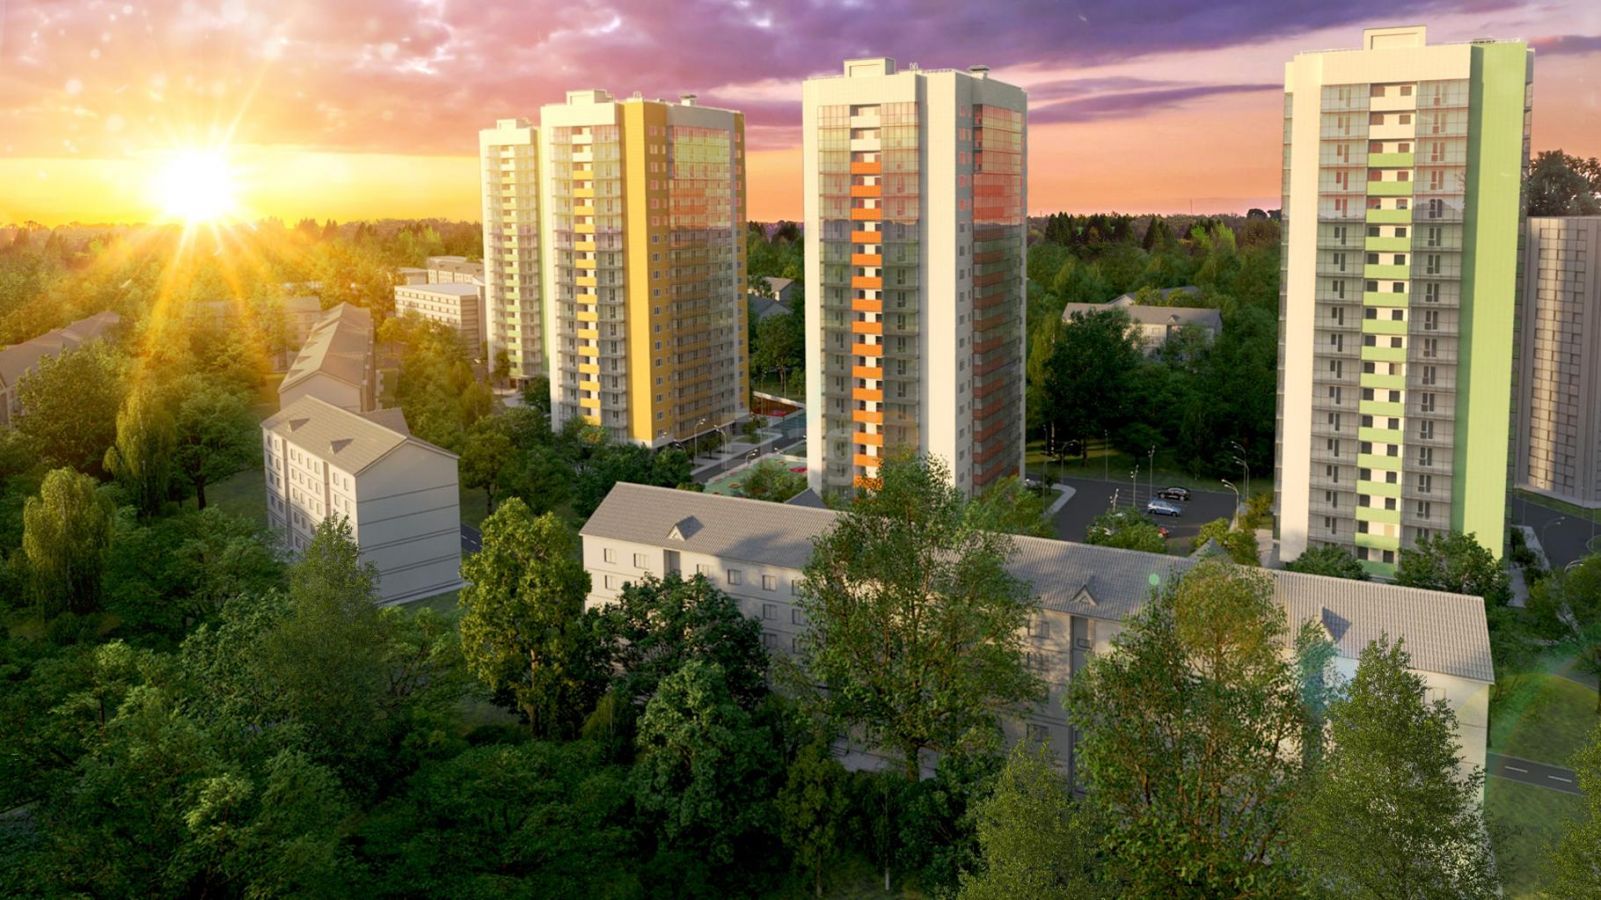 родажа 2кк квартиры в ЖК «Green city»   Представляет из себя комфортабельный жилой комплекс расположенный по адресу... - 2